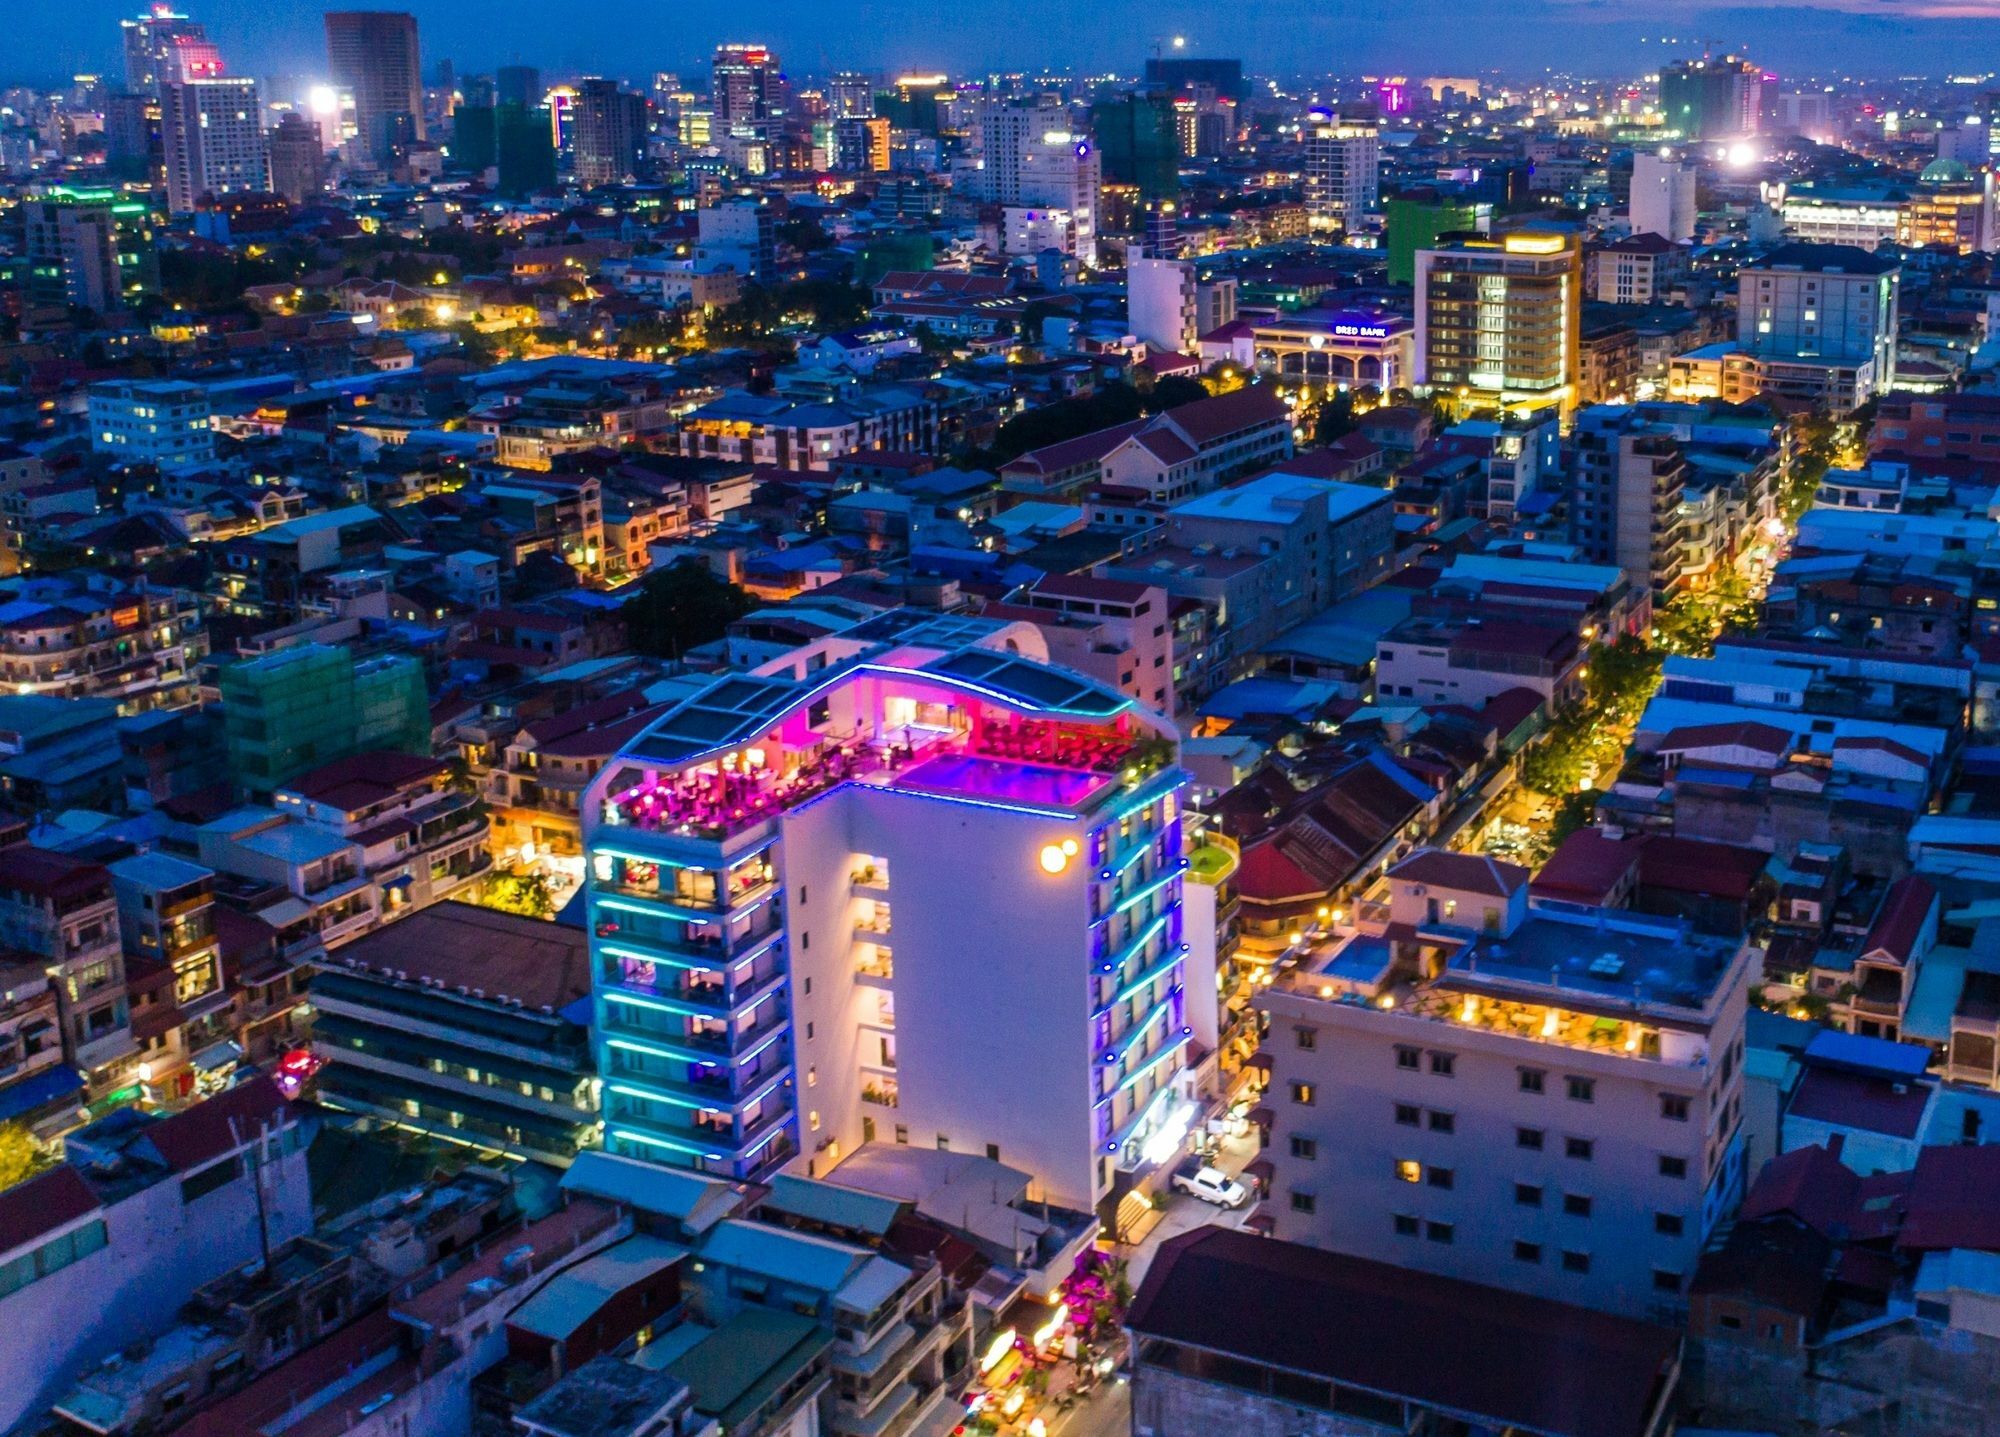 Sun & Moon, Urban Hotel Phnom Penh Zewnętrze zdjęcie